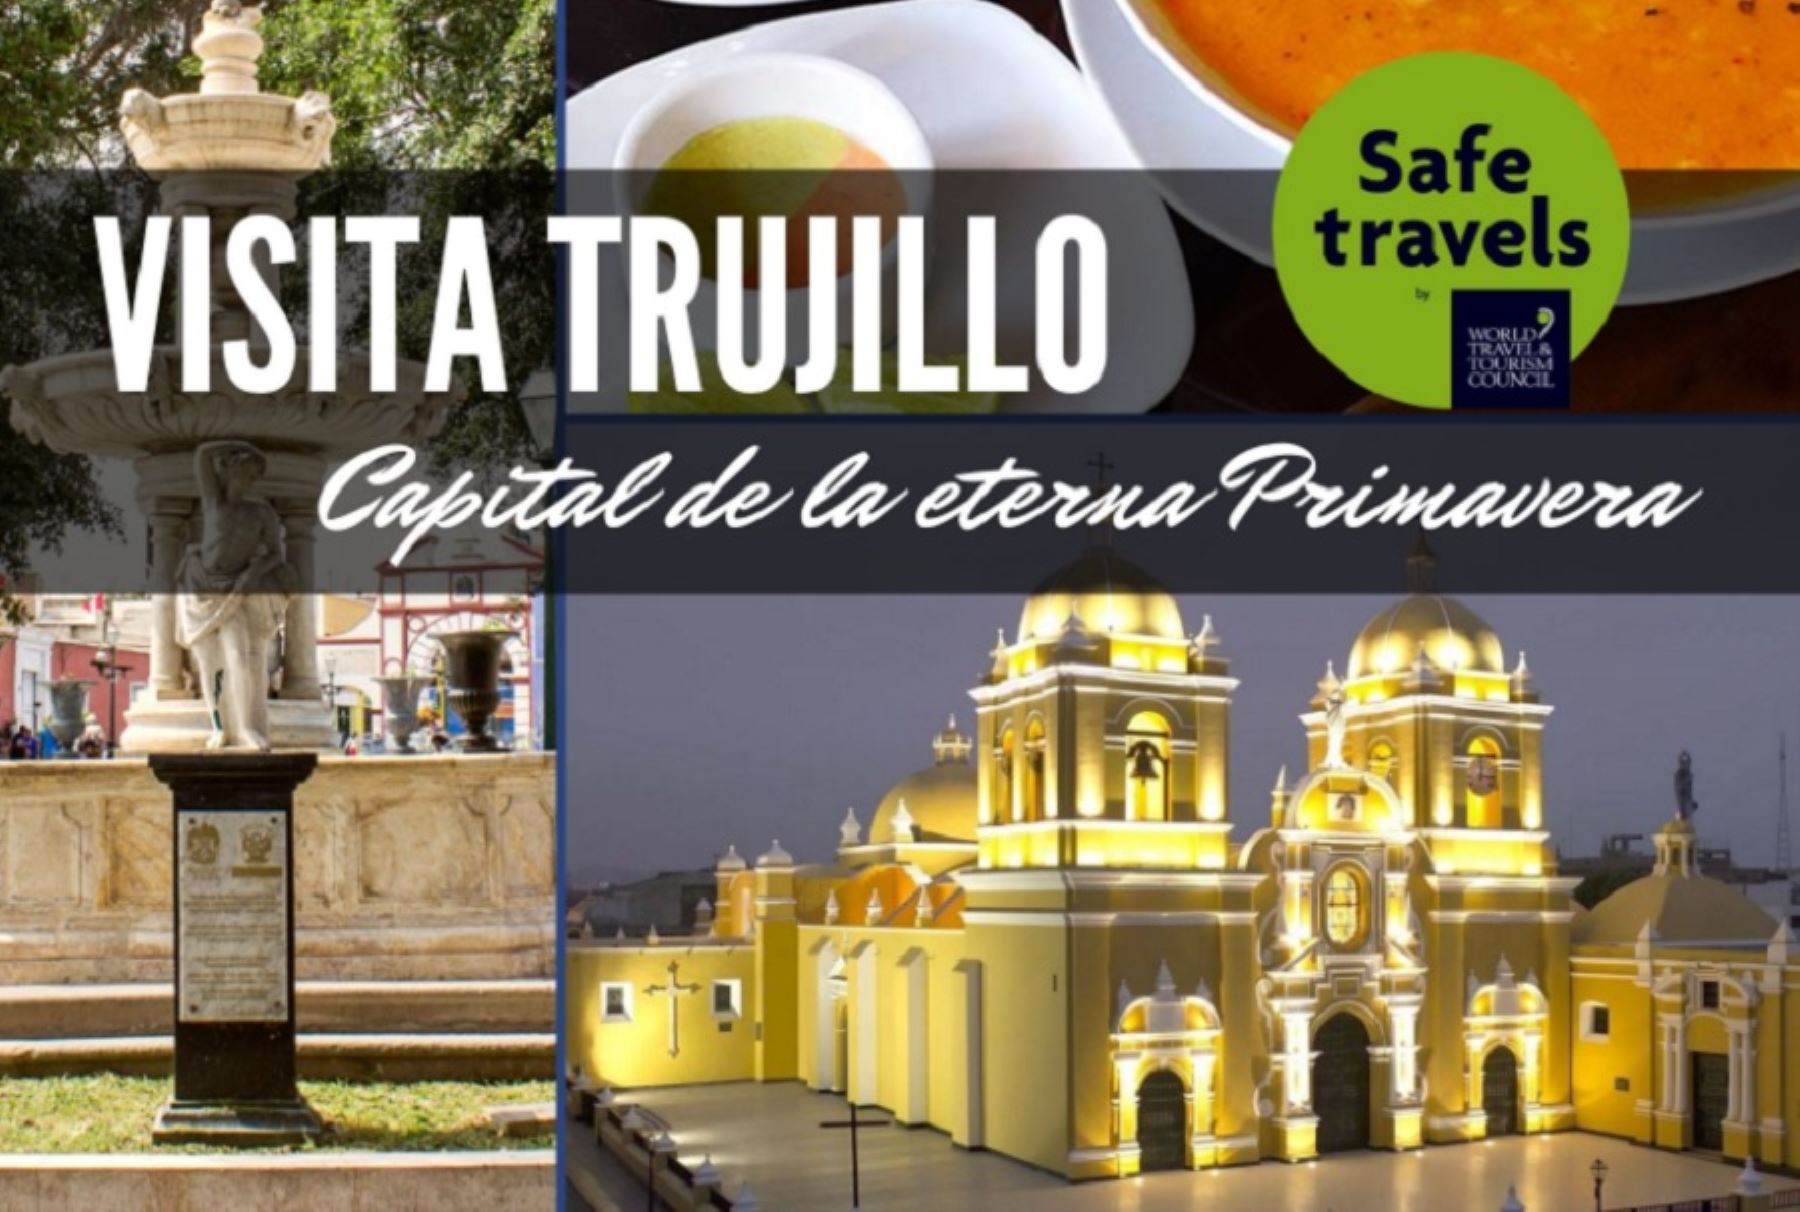 Trujillo, conocida como la “Ciudad de la eterna primavera” y capital de la región La Libertad nos invita a visitar la amplia variedad de atractivos turísticos que posee este cautivante destino del norte peruano.